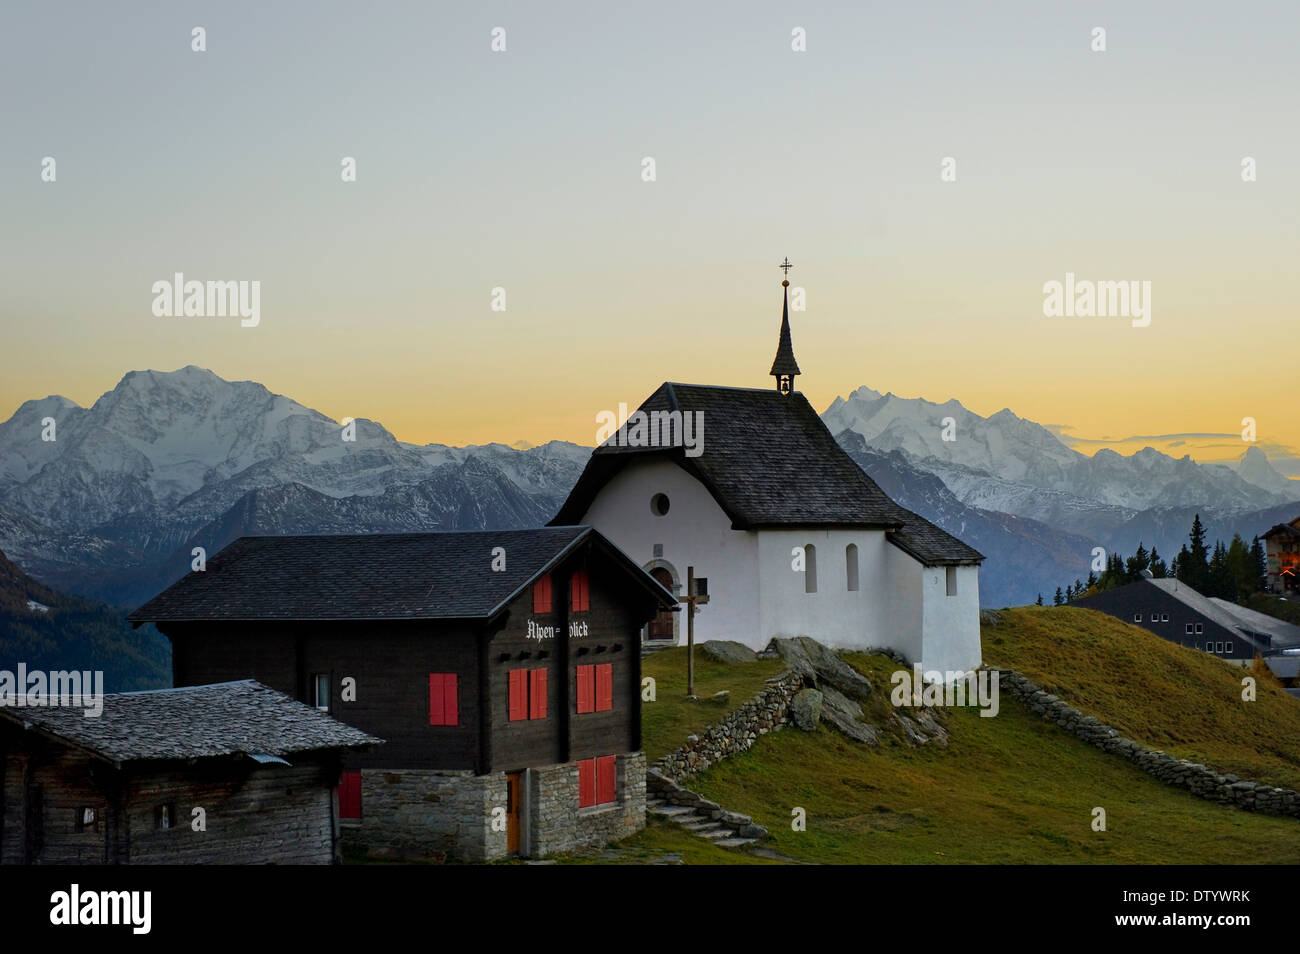 Bettmeralp, sunset, Canton of Valais, Switzerland Stock Photo